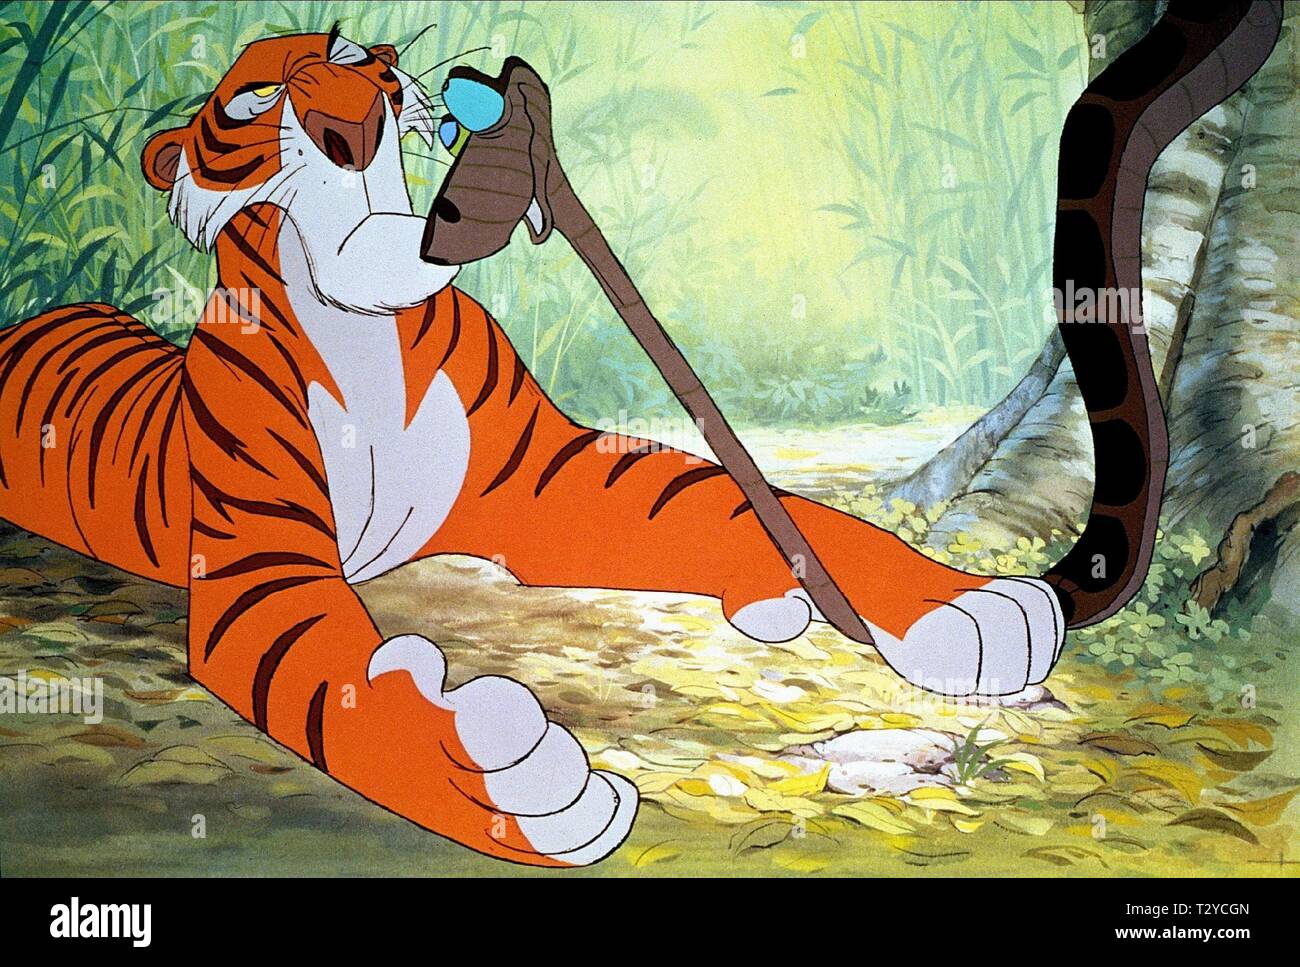 Sher Khan Kaa Die Schlange Das Dschungelbuch 1967 Stockfotografie Alamy